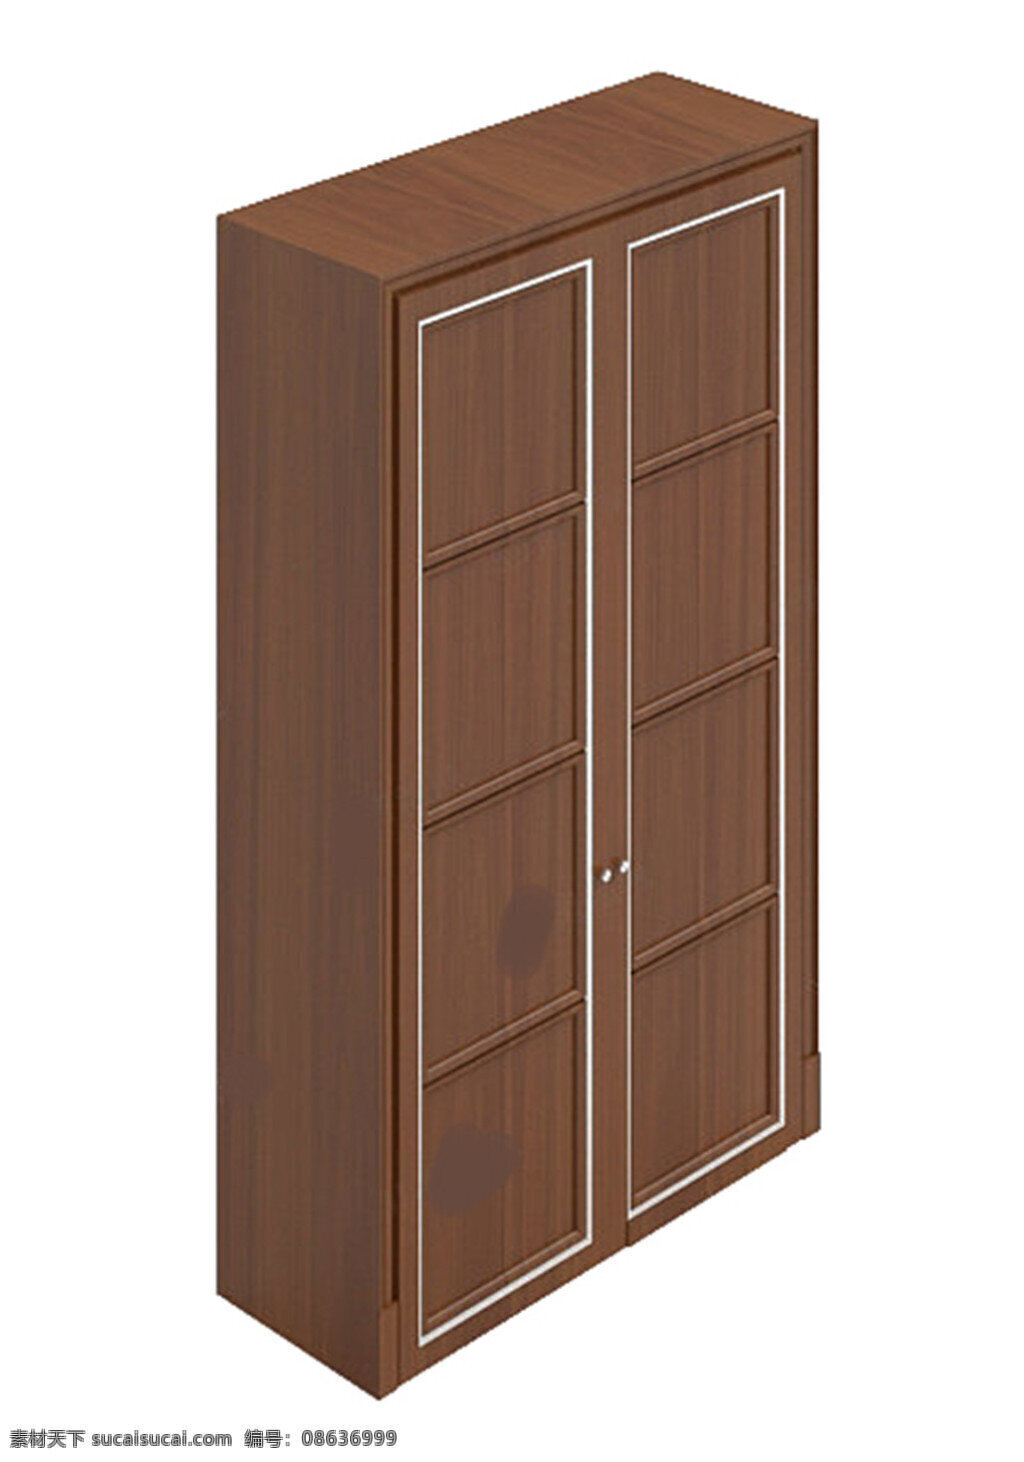 衣柜 模型 模板下载 手柜 卧室中式 max2009 柜门锁 装饰品 有贴图 家具组合 方拉 max 白色